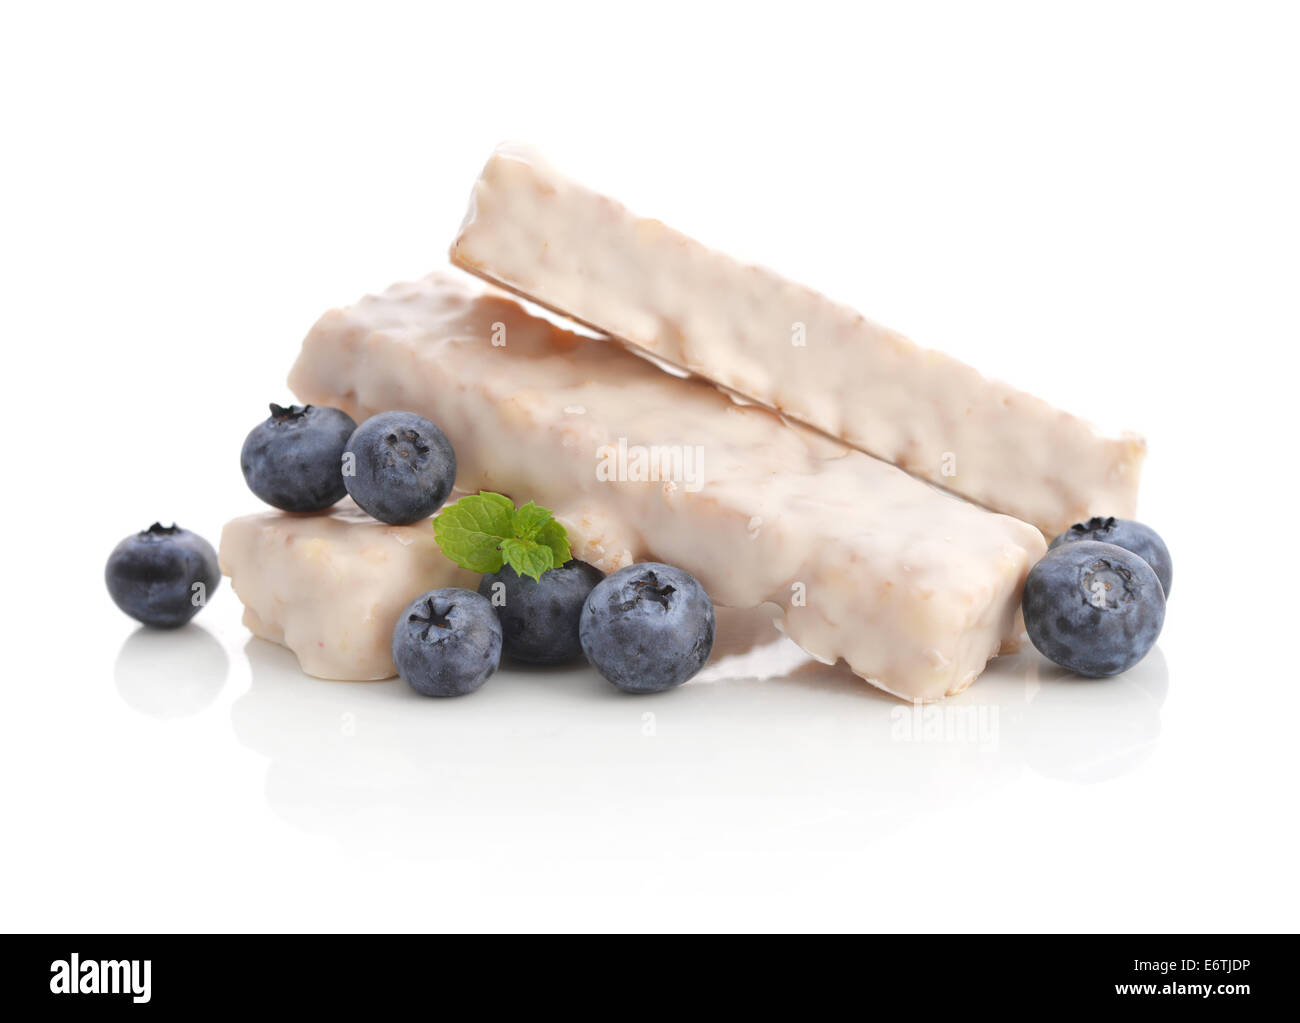 Yogurt Muesli Bars with fresh blueberry isolated on white background Stock Photo